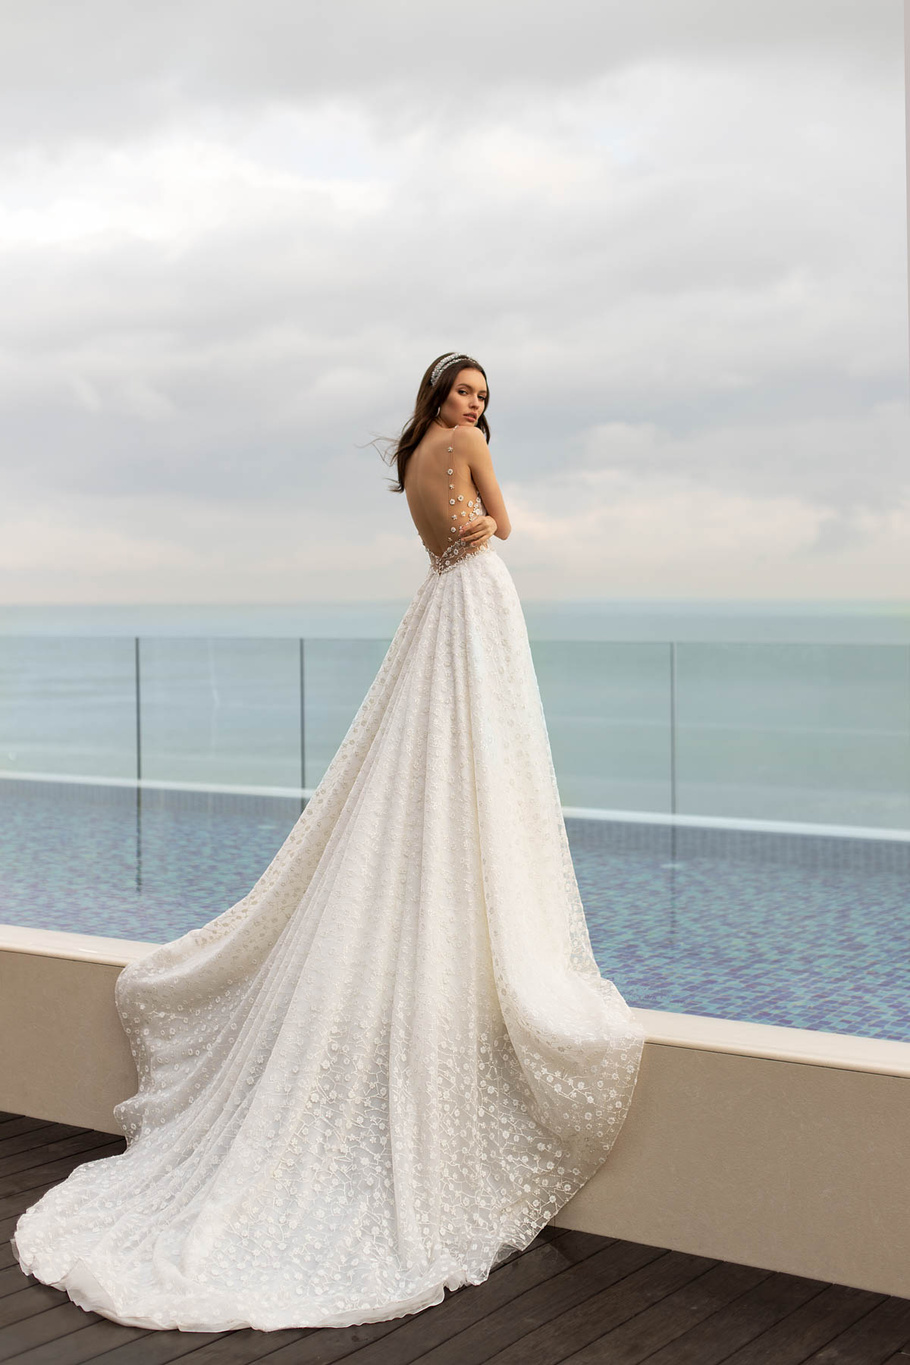 Купить свадебное платье «Эиринесс» Ида Торез из коллекции 2021 года в салоне «Мэри Трюфель»